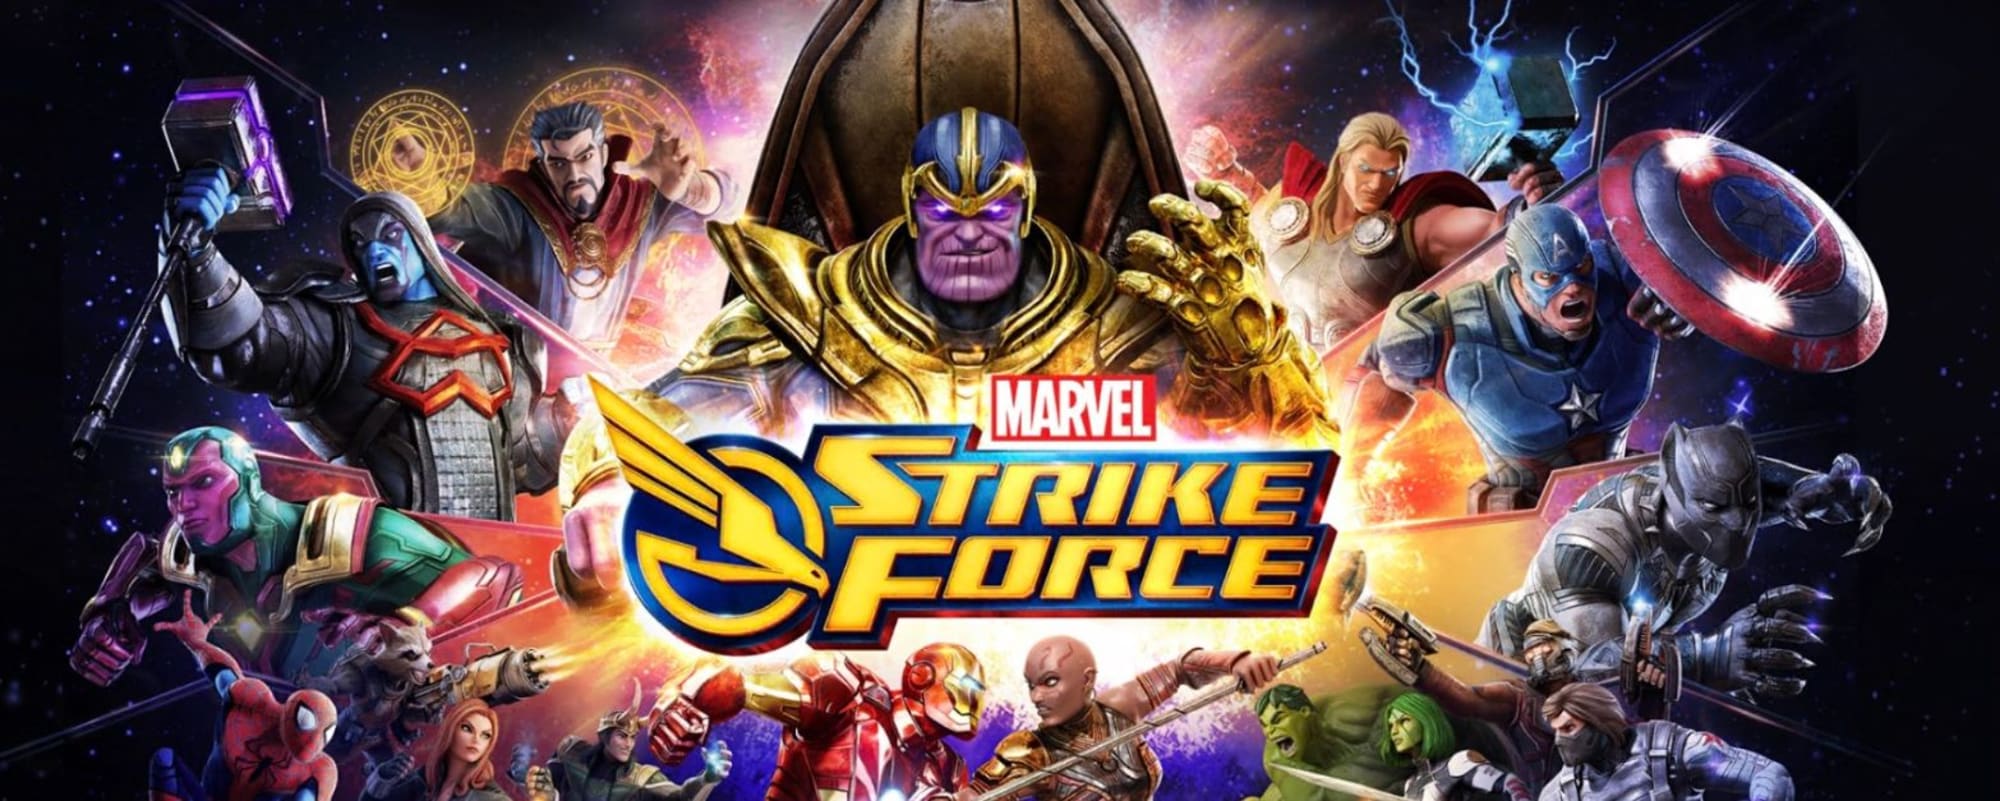 marvel strike force